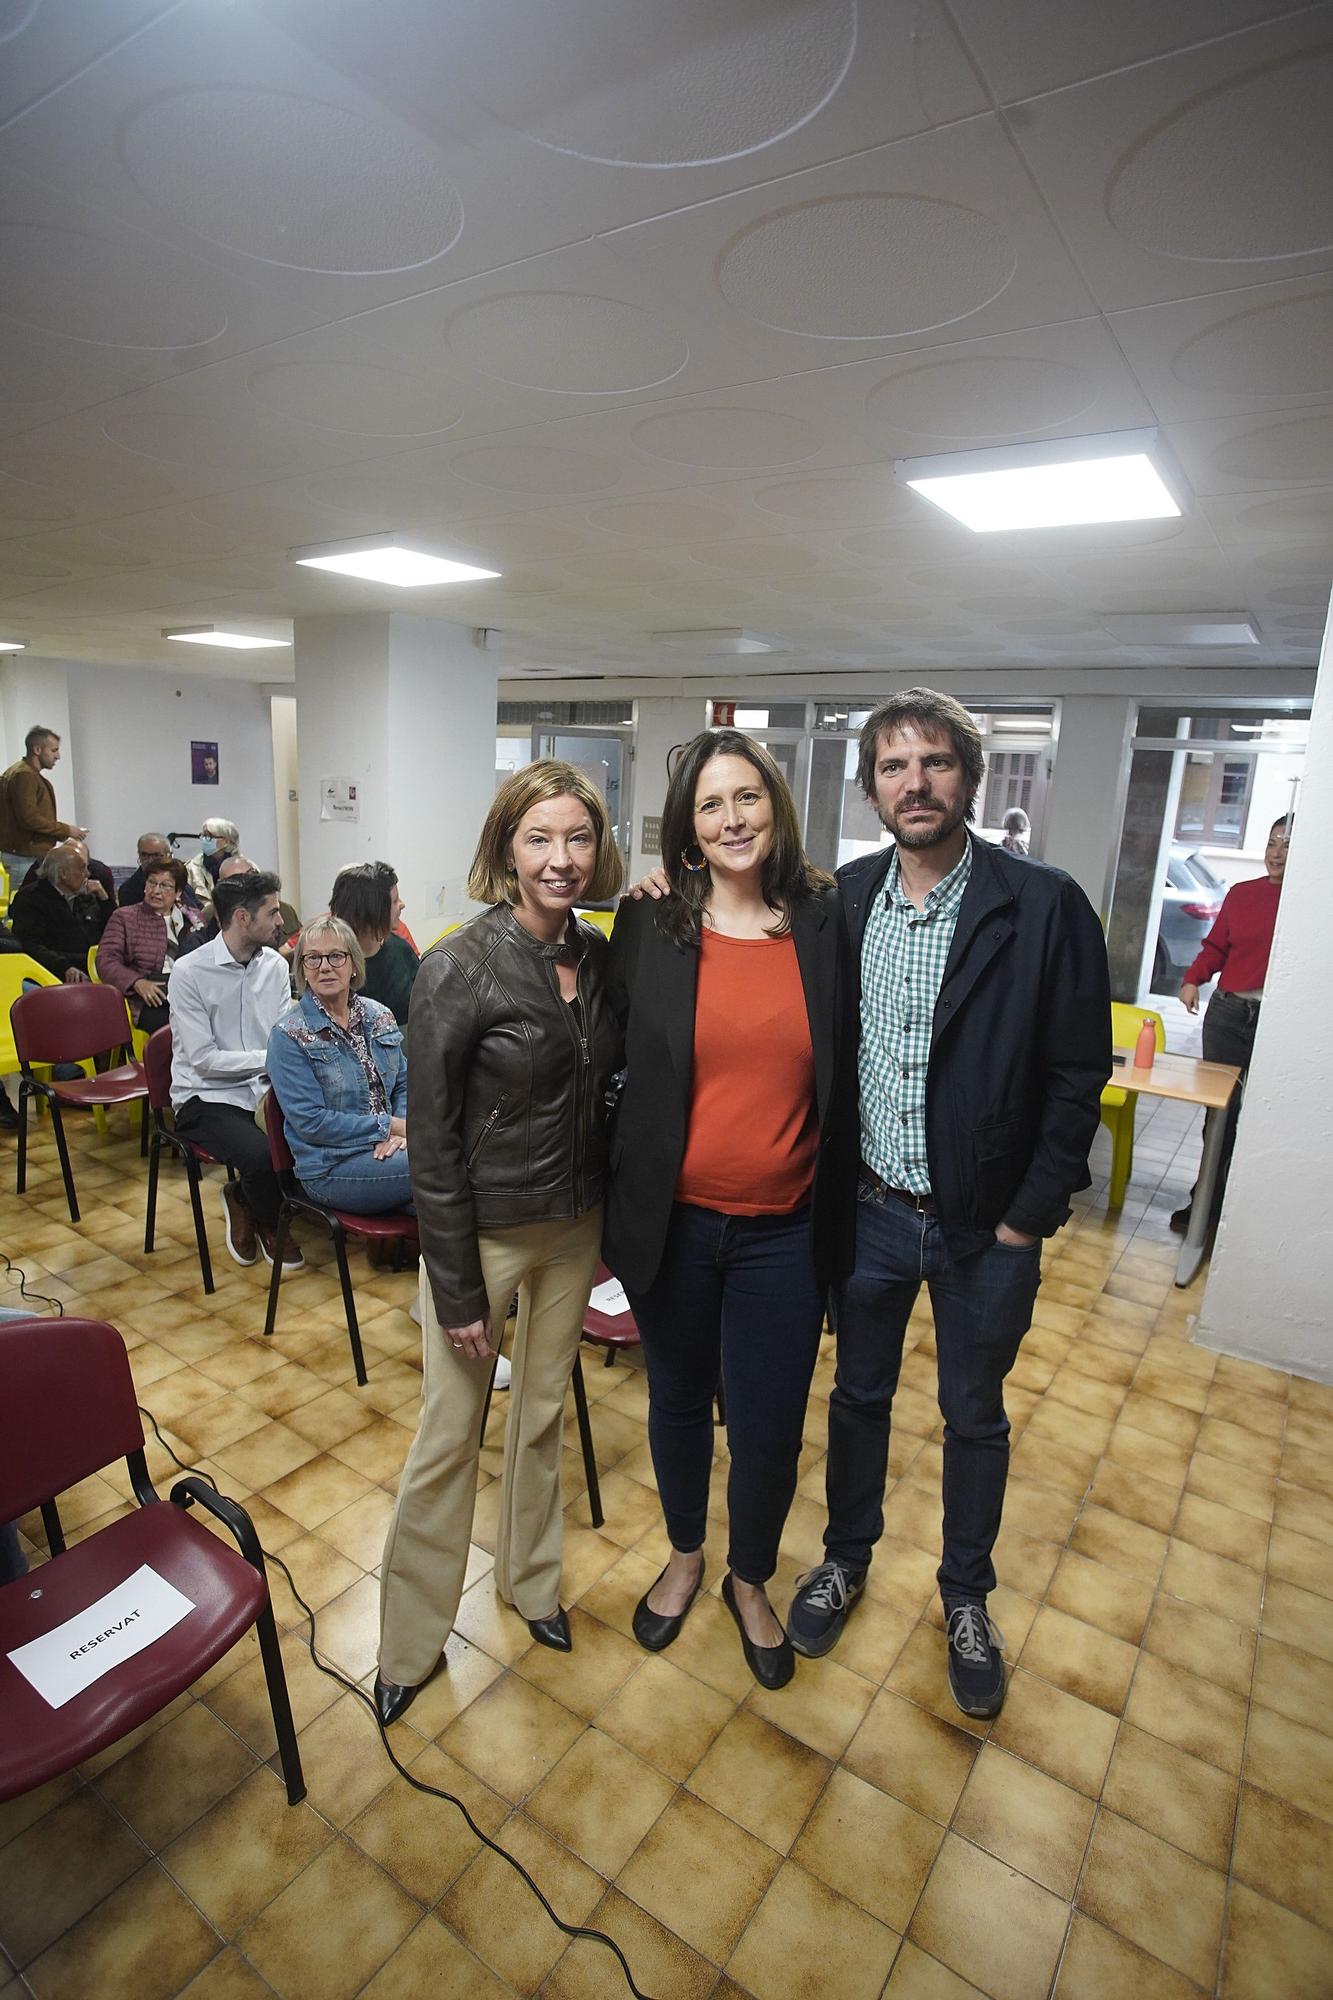 Les millors imatges de l'acte central de Campanya de En Comú Podem a Girona